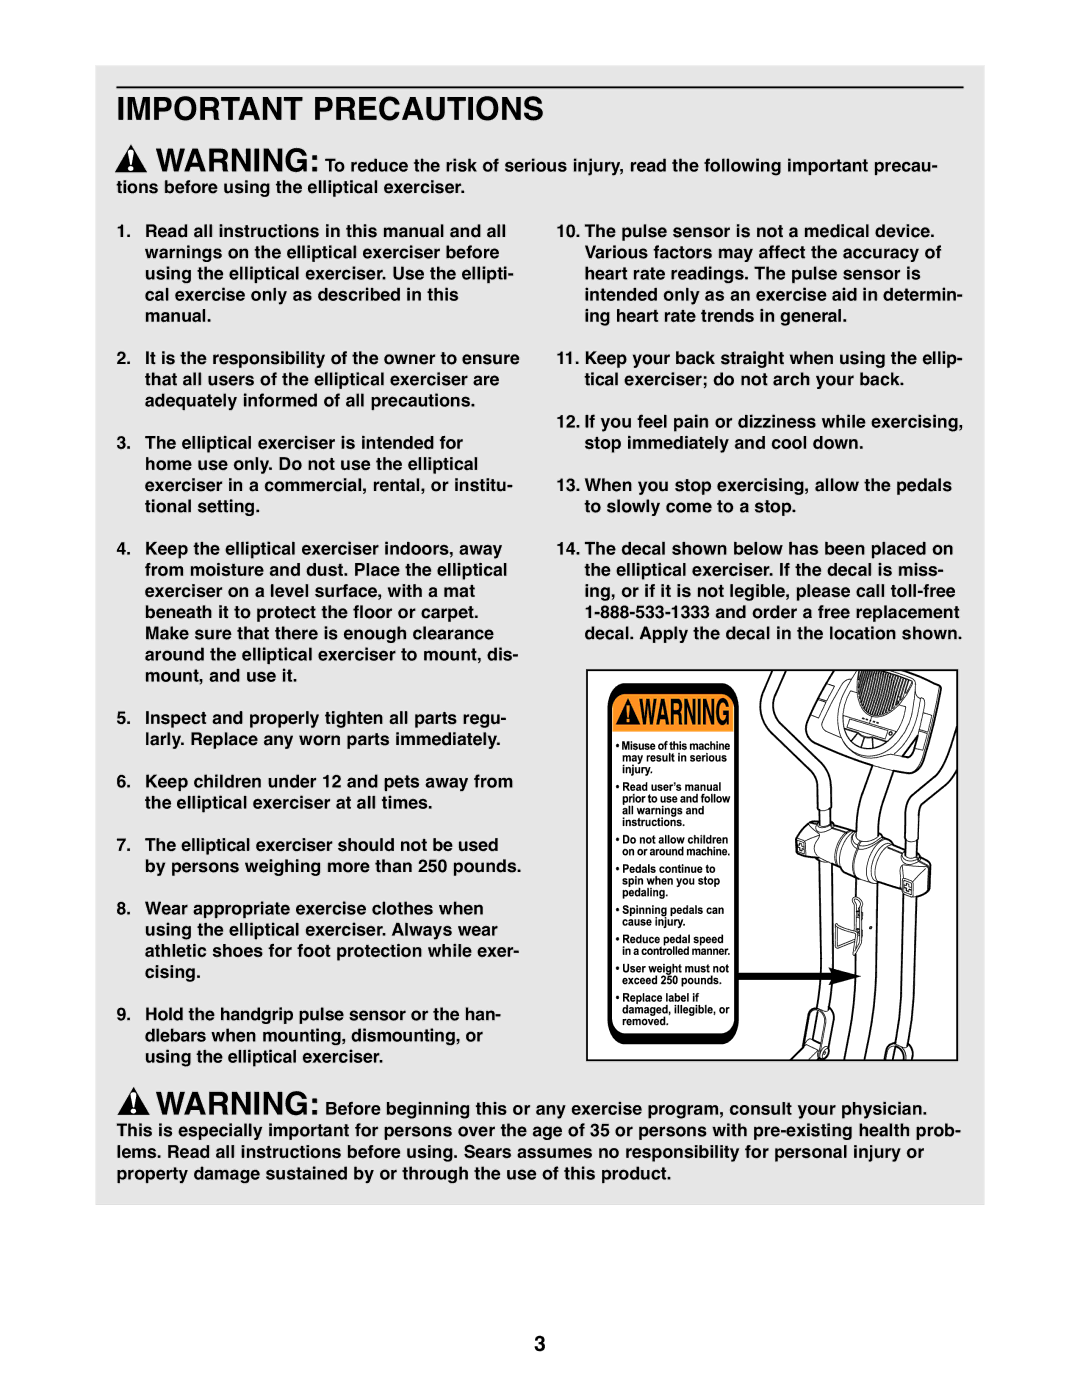 ProForm 831.28544.2 user manual Important Precautions 